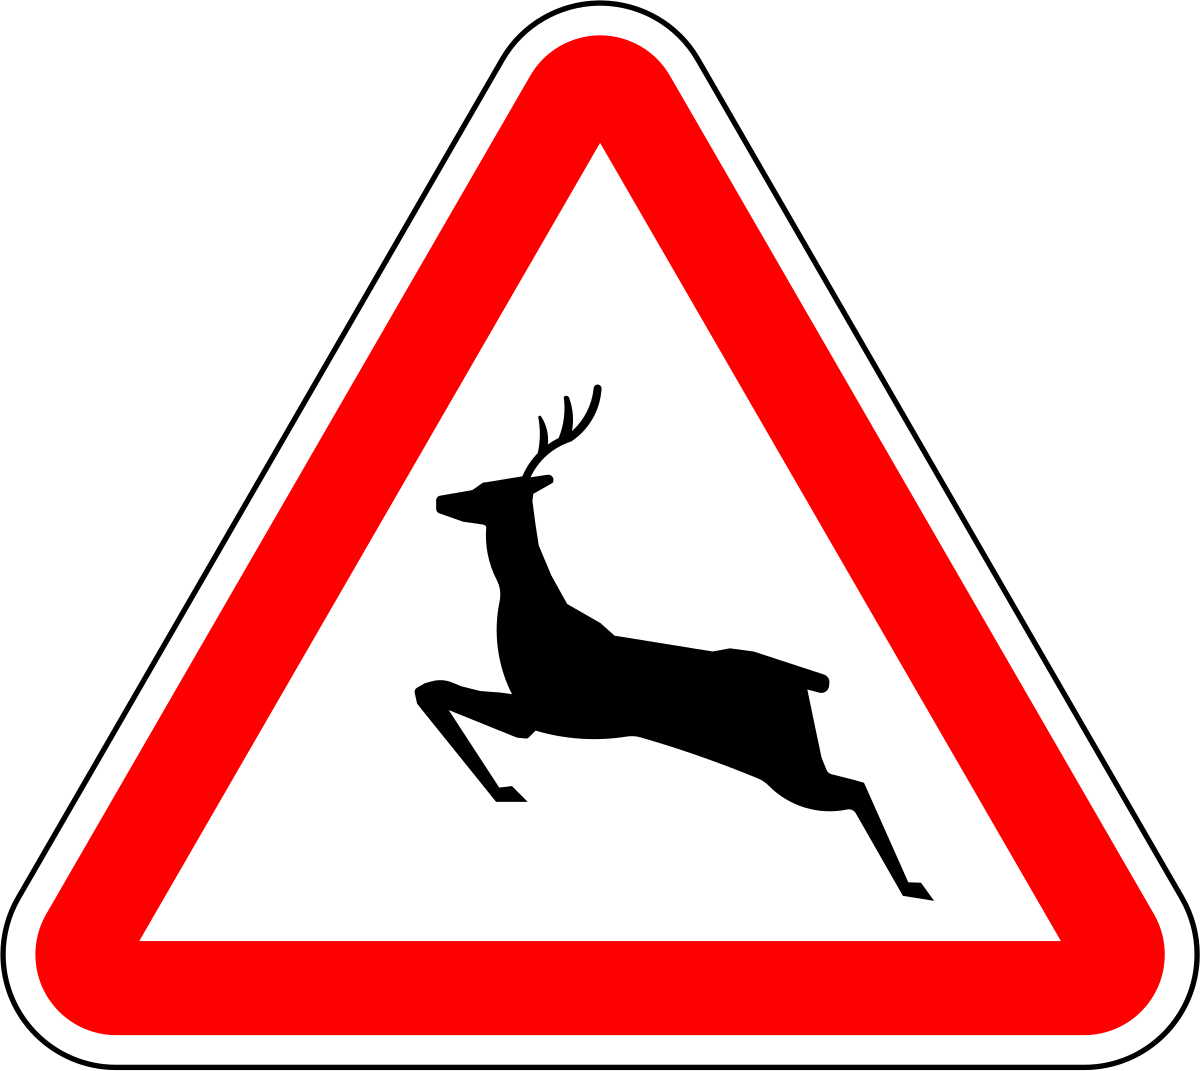 Олень дорожный. Дорожный знак олень. Дорожный знак Дикие животные. Знак олень в треугольнике. Знак олени на дороге.